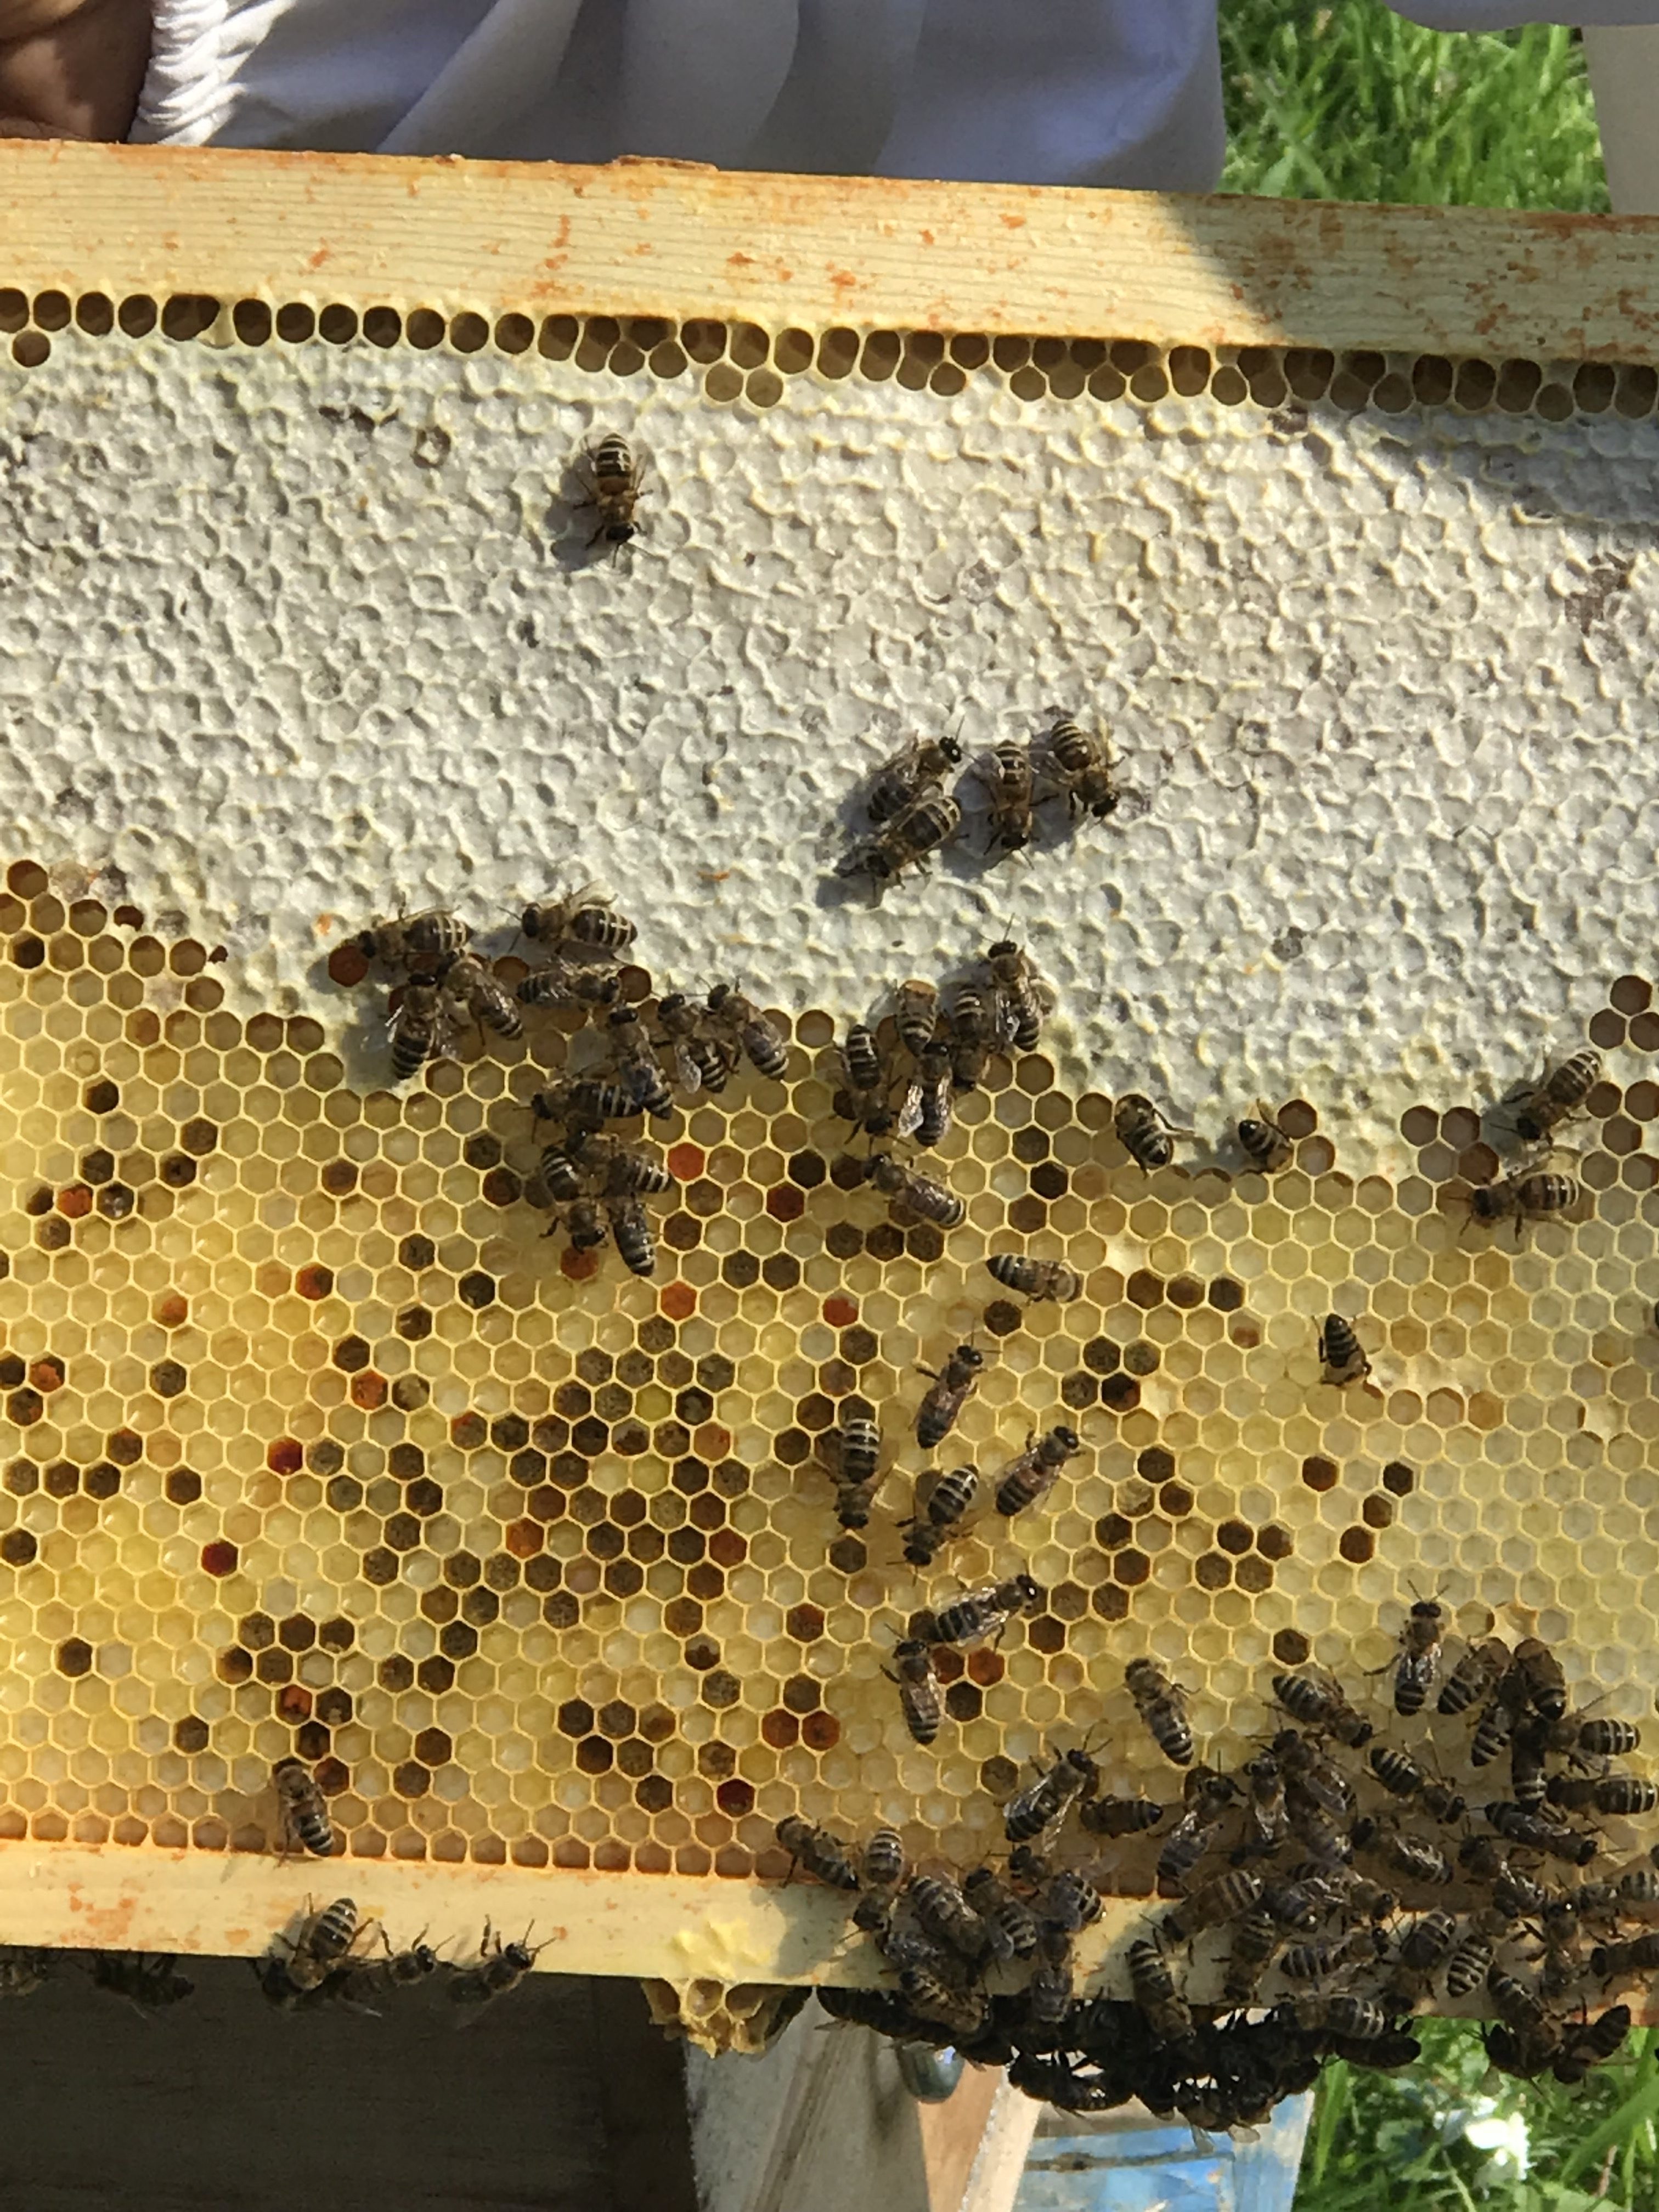 beginner beekeeping 